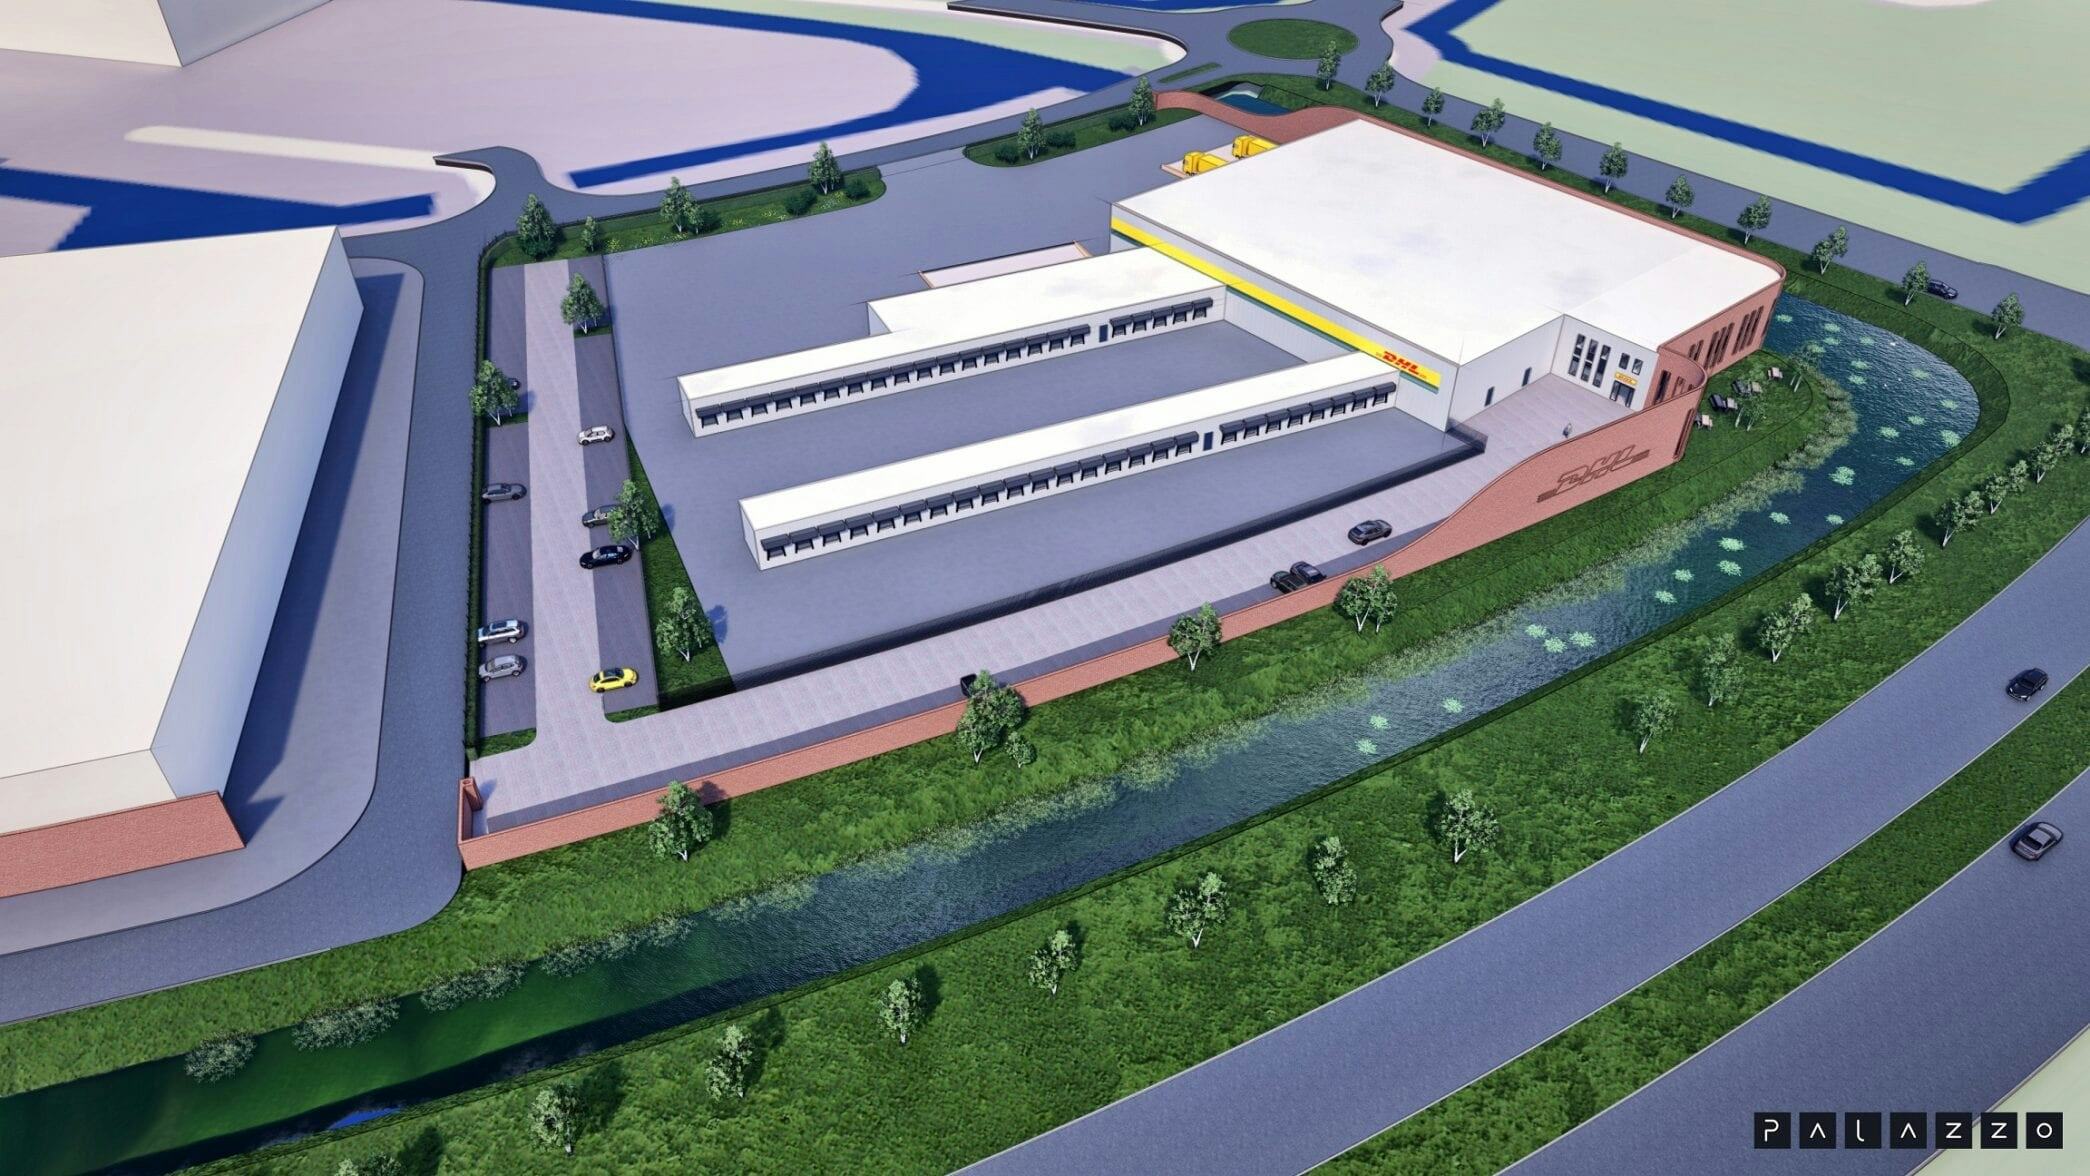 Betsy Trotwood tegel etnisch DHL Express bouwt nieuw sorteercentrum in Nieuw-Vennep